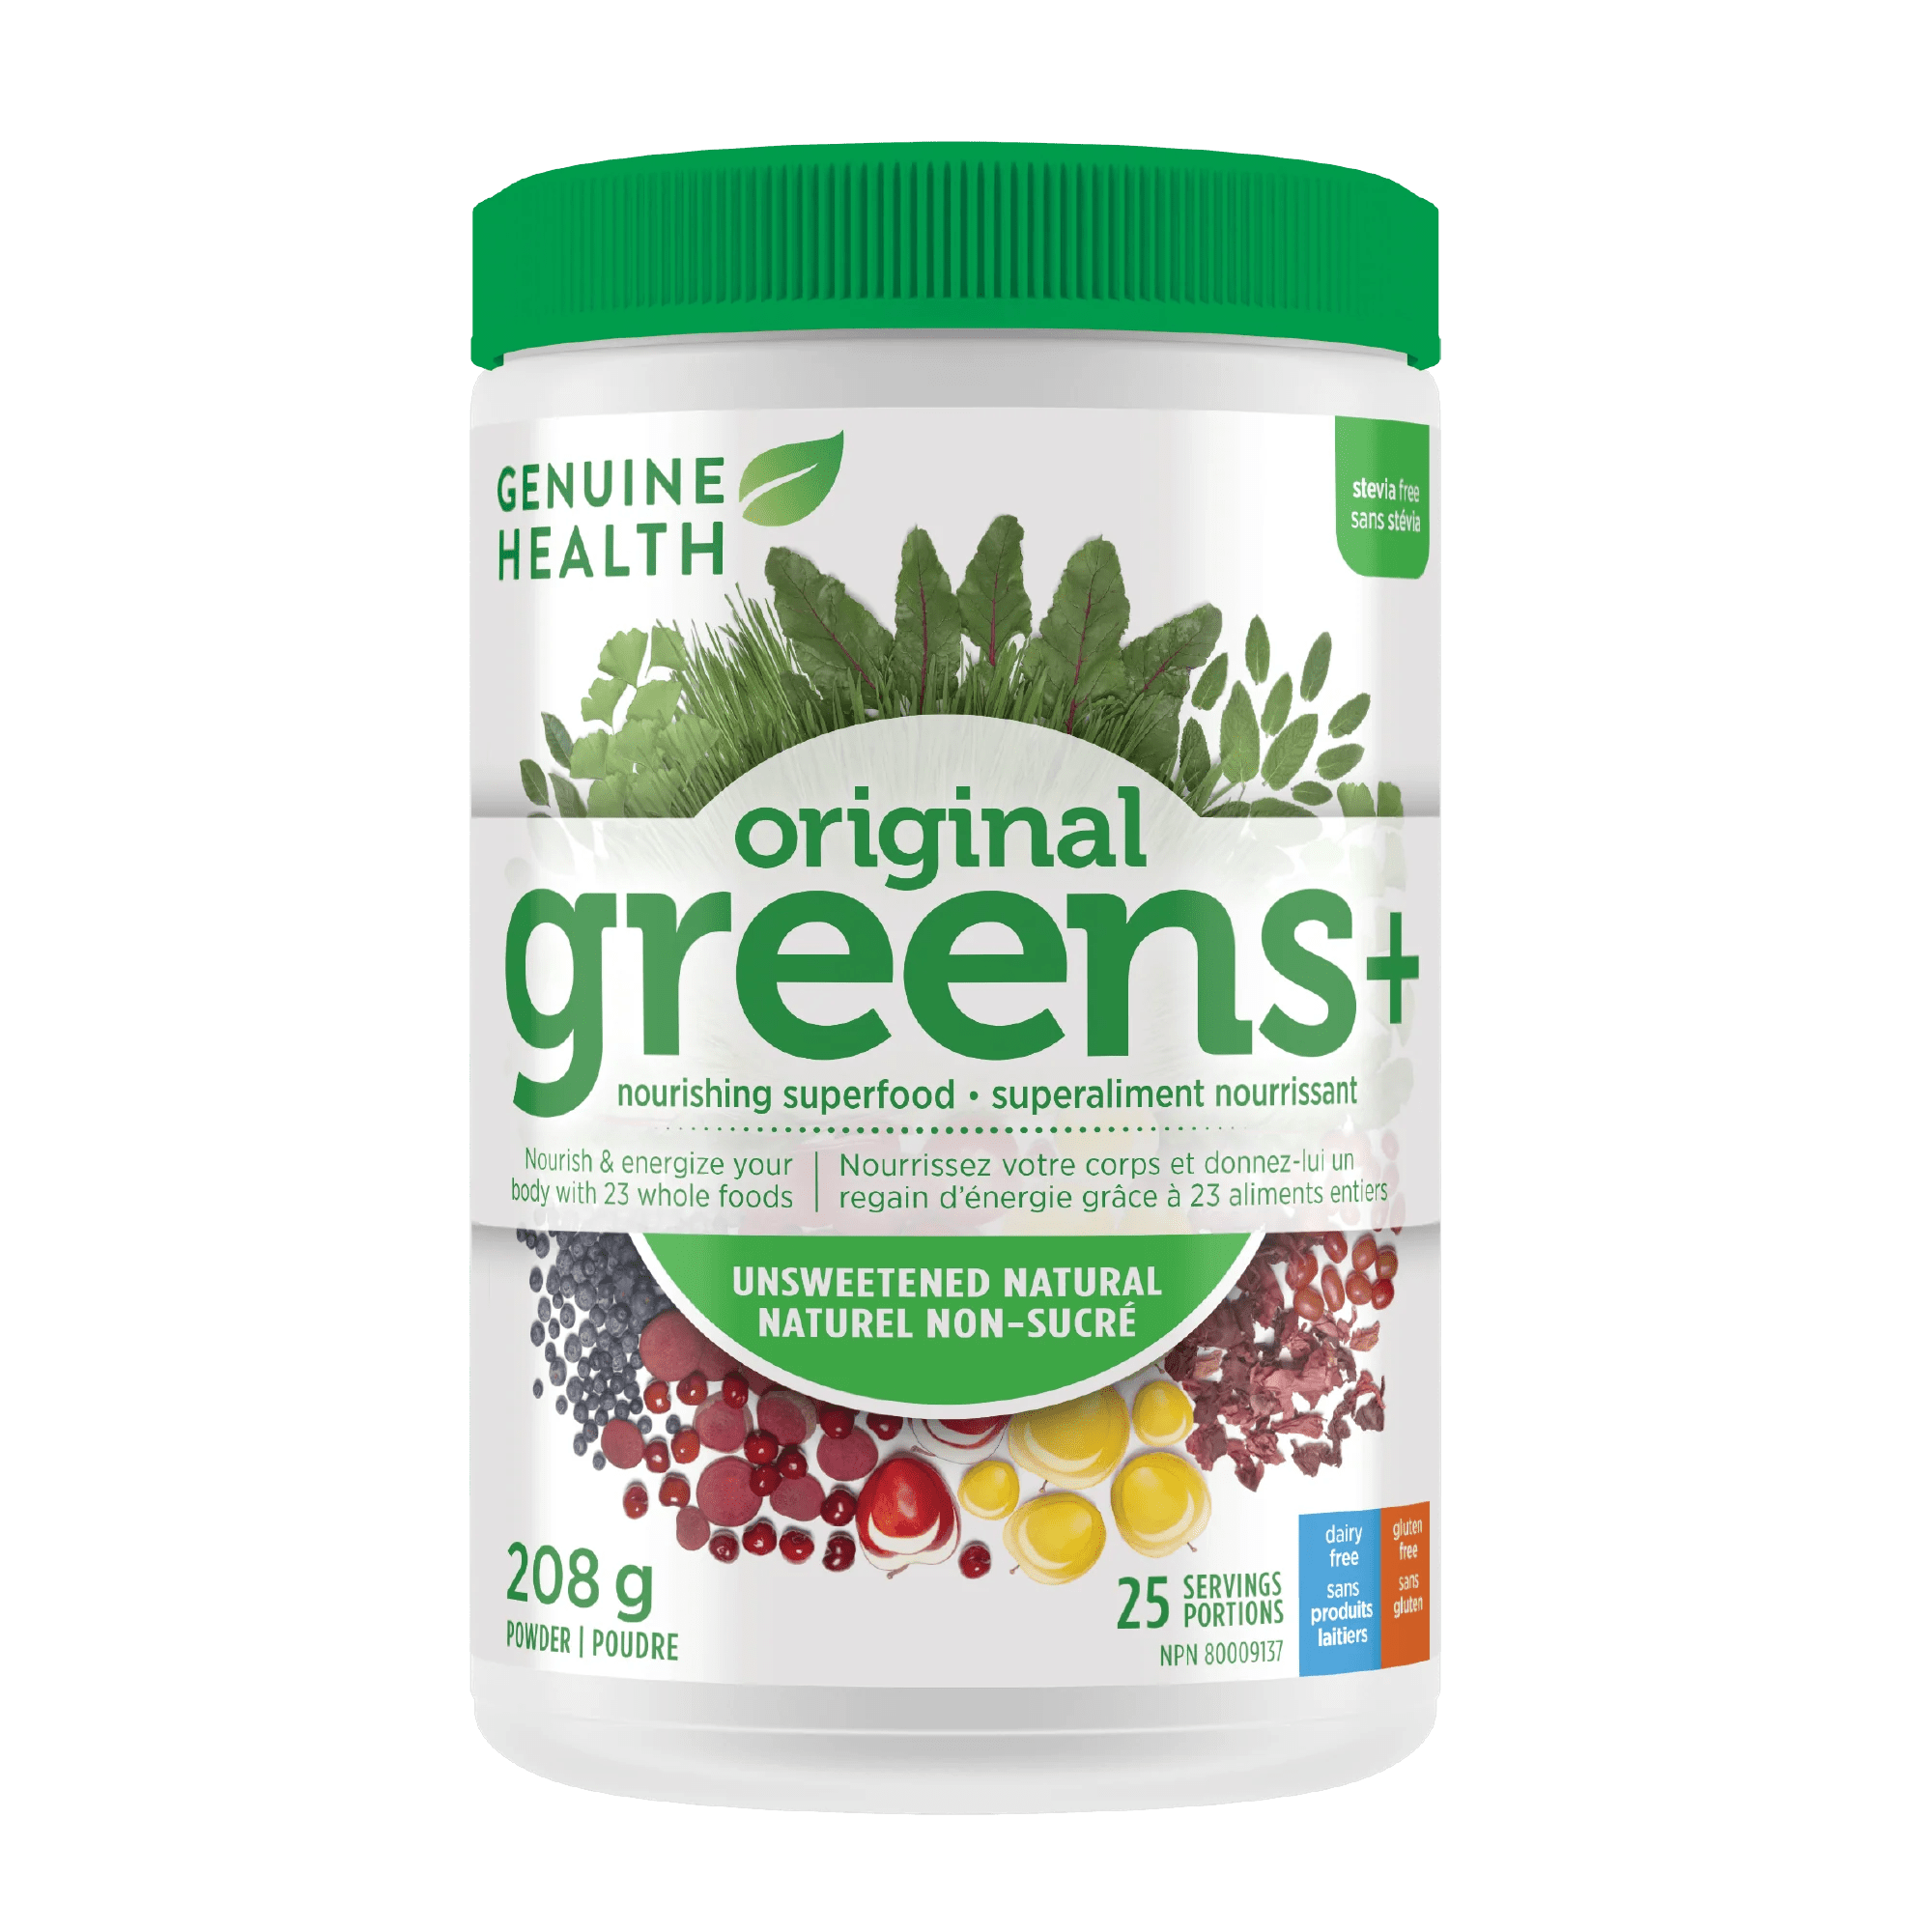 GENUINE HEALTH Suppléments Greens+ (naturel non sucré) 208g